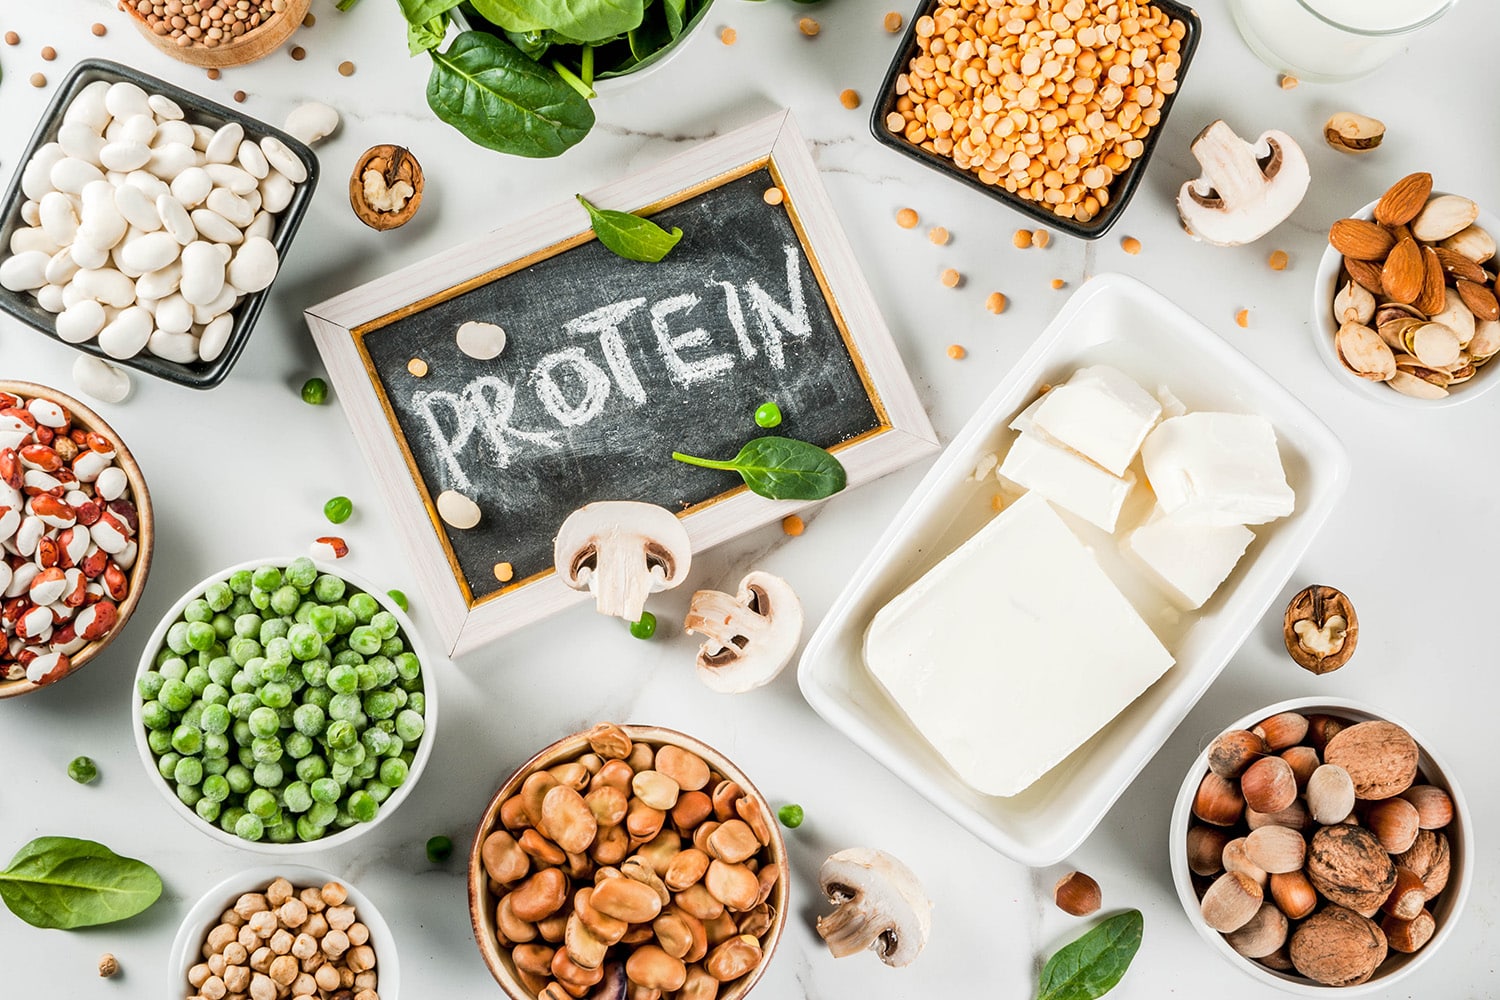 Protéines naturelles et saines comme le tofu, les petits pois, les noix, le fromage, les haricots, les lentilles